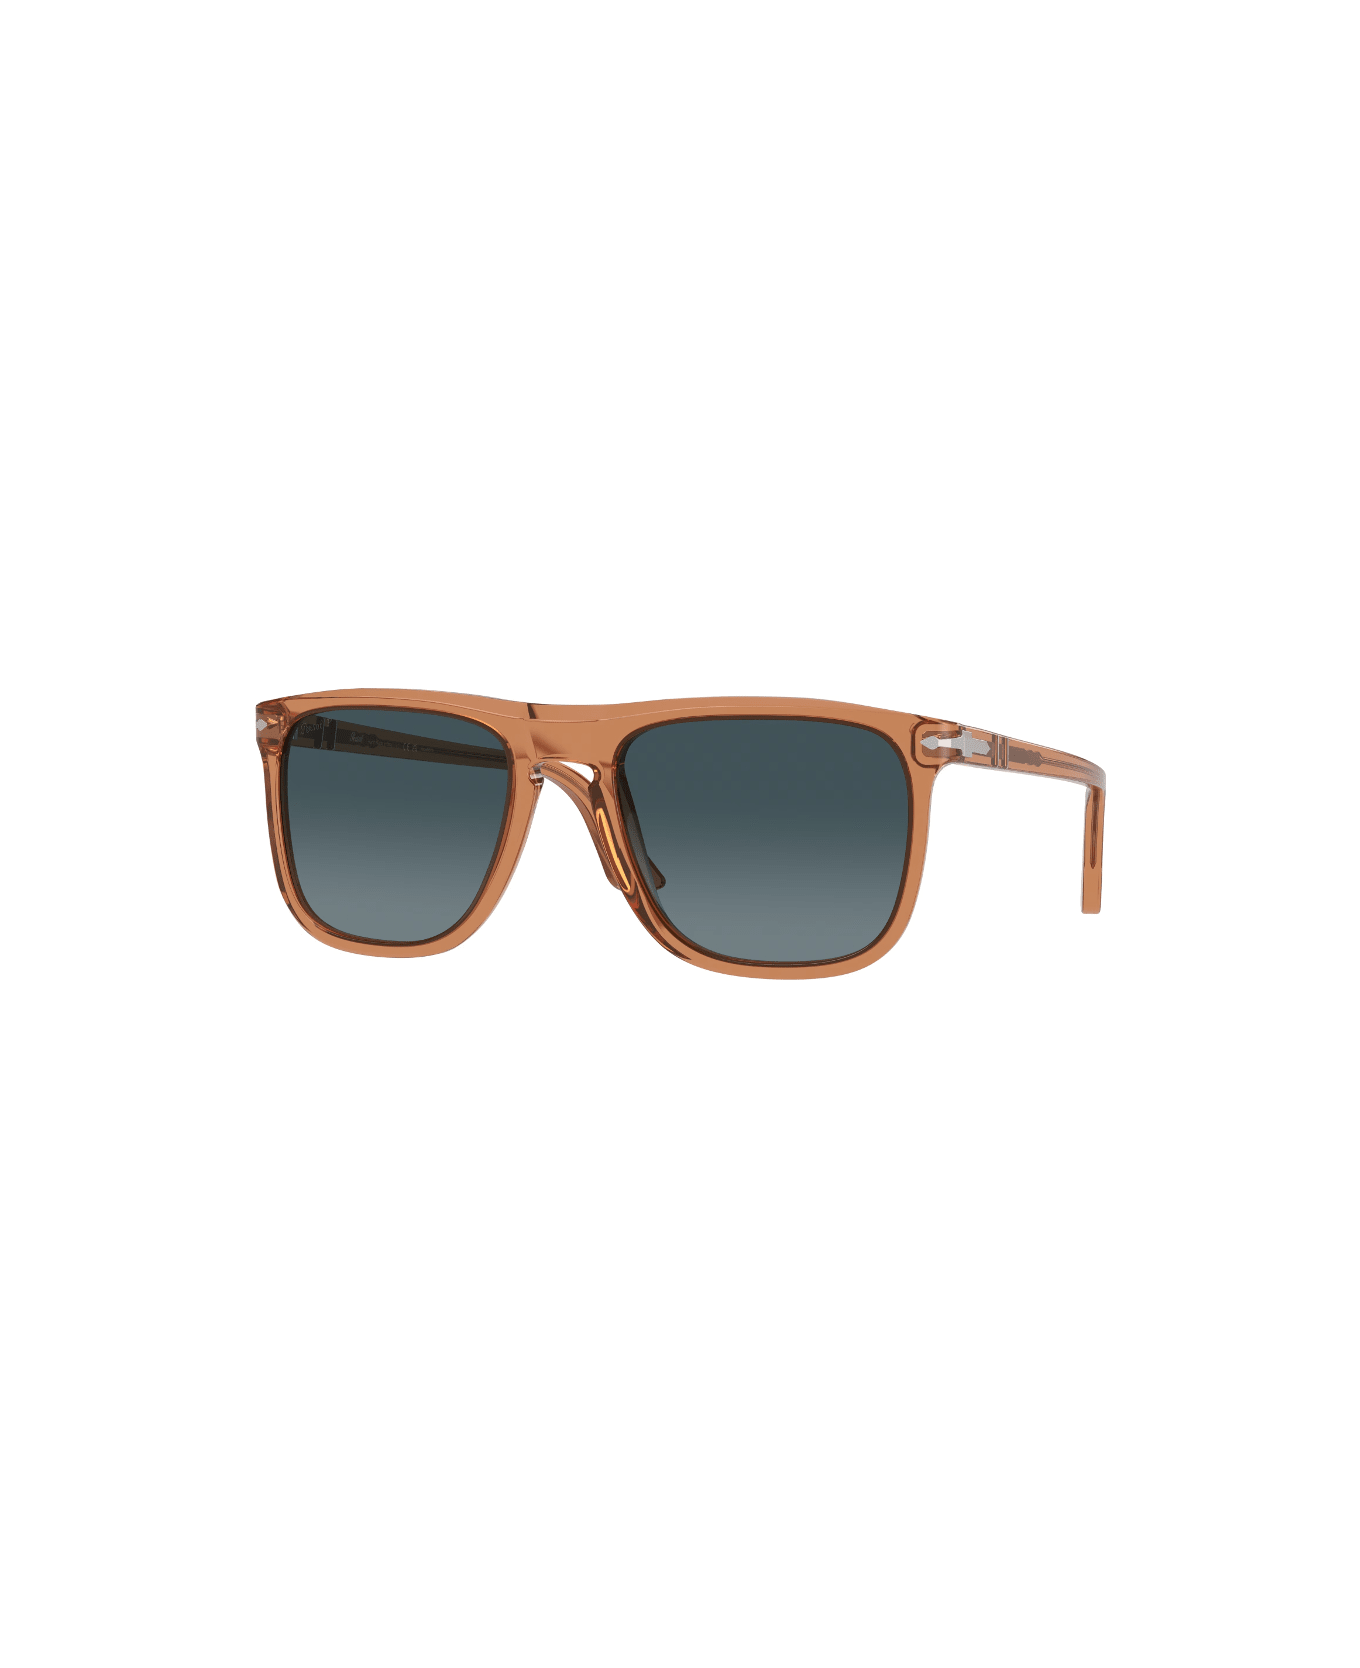 Persol PO3336s - 1213/S3 Sunglasses - Marrone trasparente サングラス